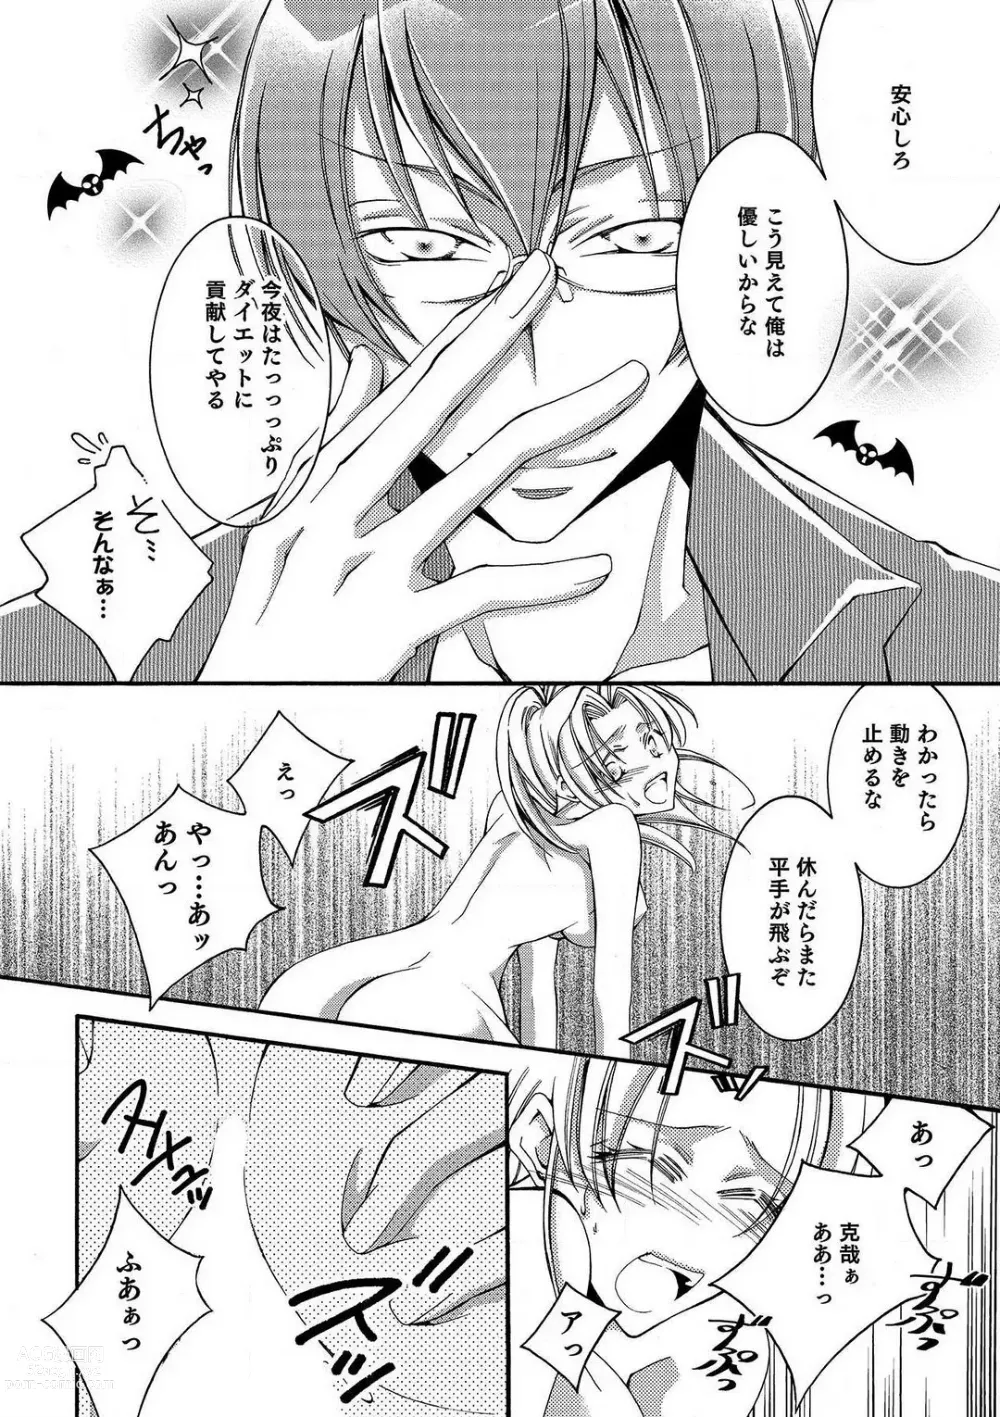 Page 19 of manga LOVE×PLAY 1-4